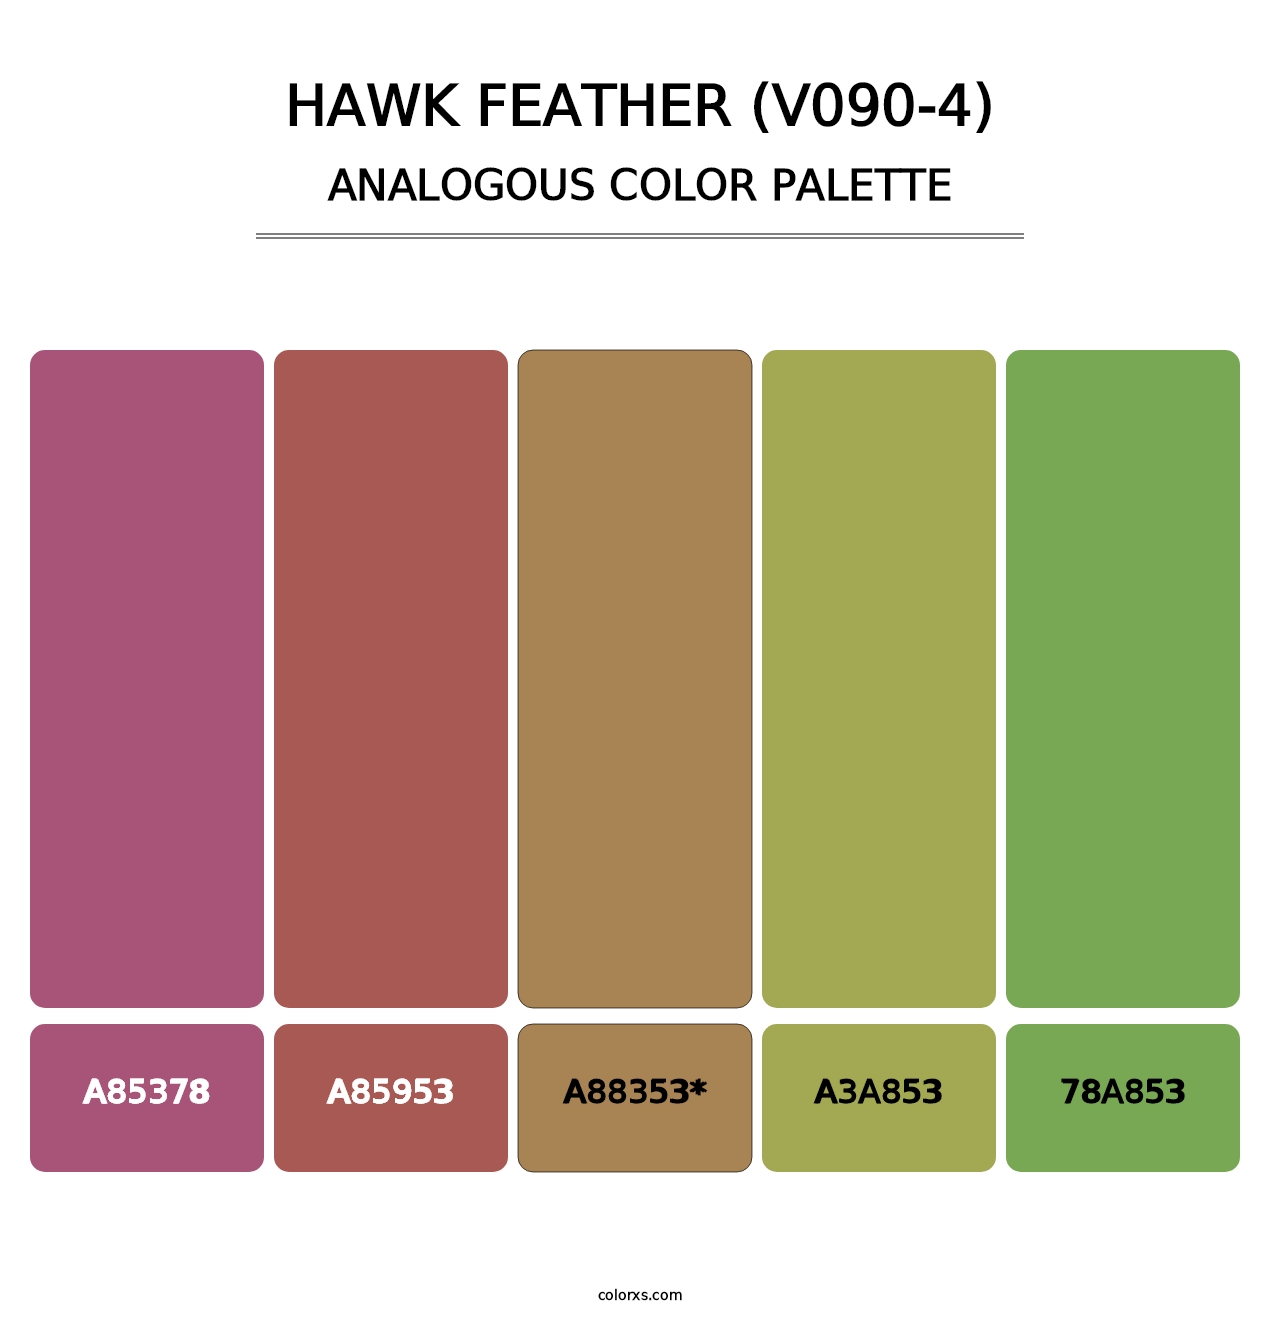 Hawk Feather (V090-4) - Analogous Color Palette